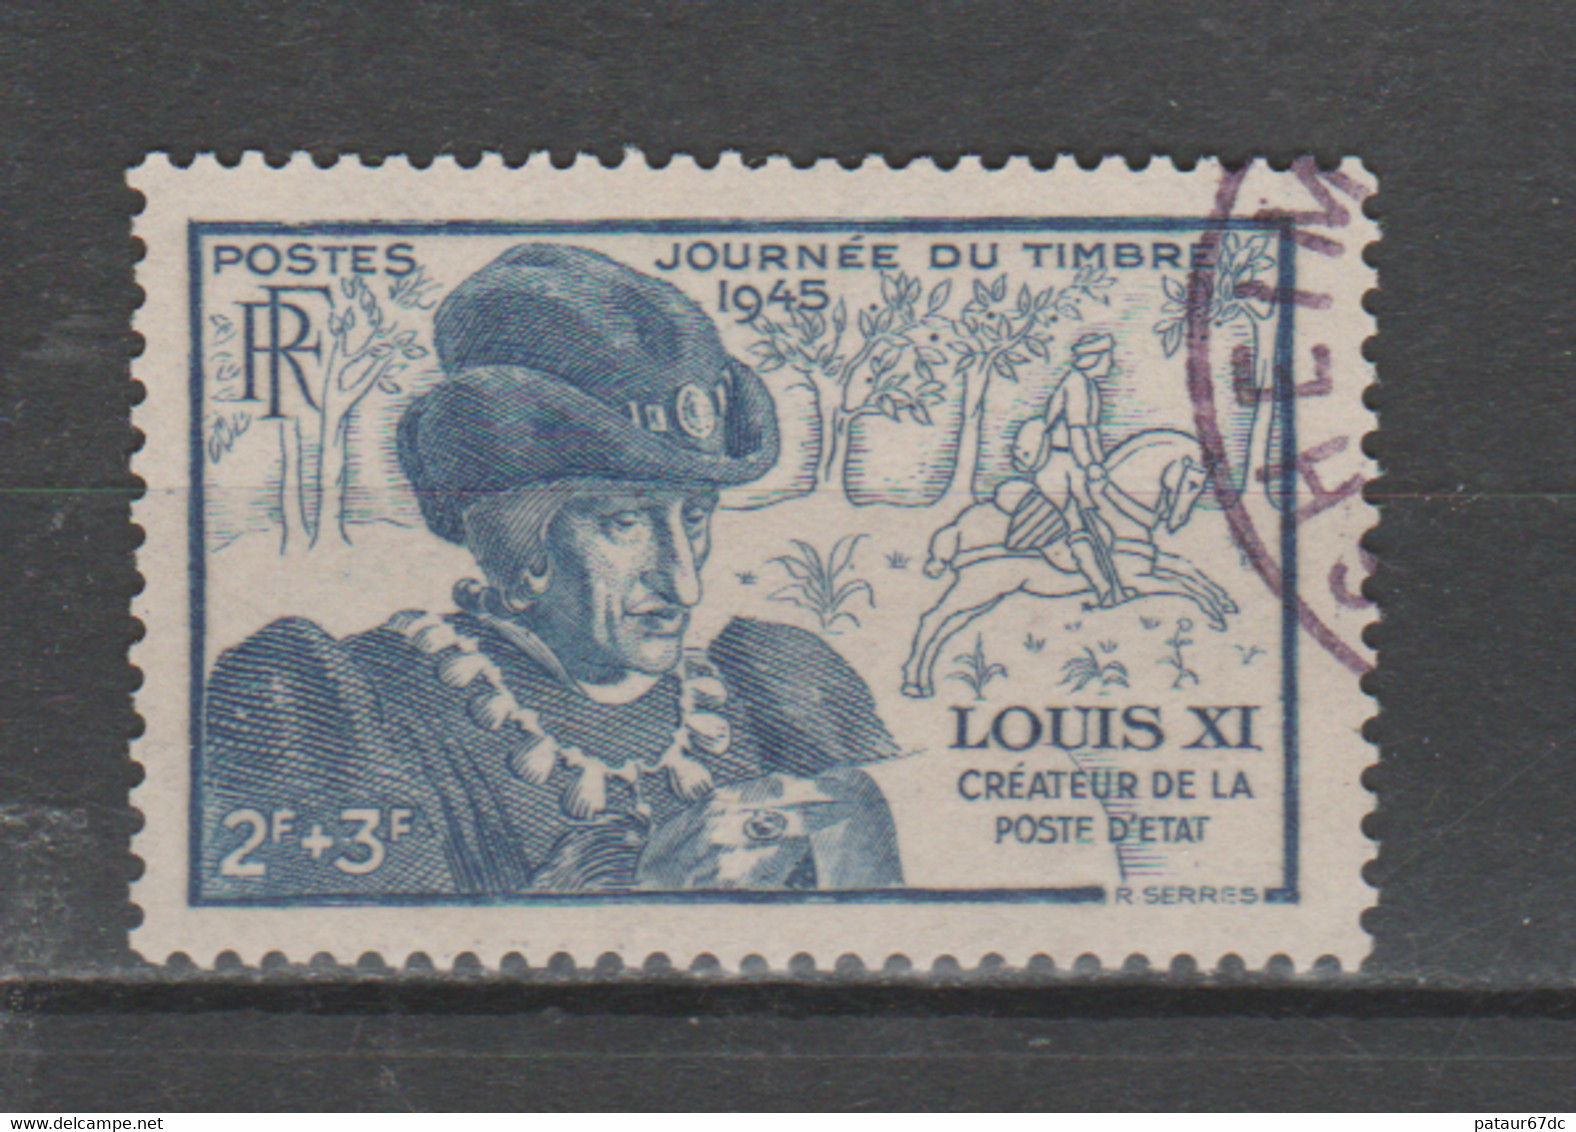 FRANCE / 1945 / Y&T N° 743 : Journée Du Timbre (Louis XI) - Choisi - Cachet Rond - Gebraucht